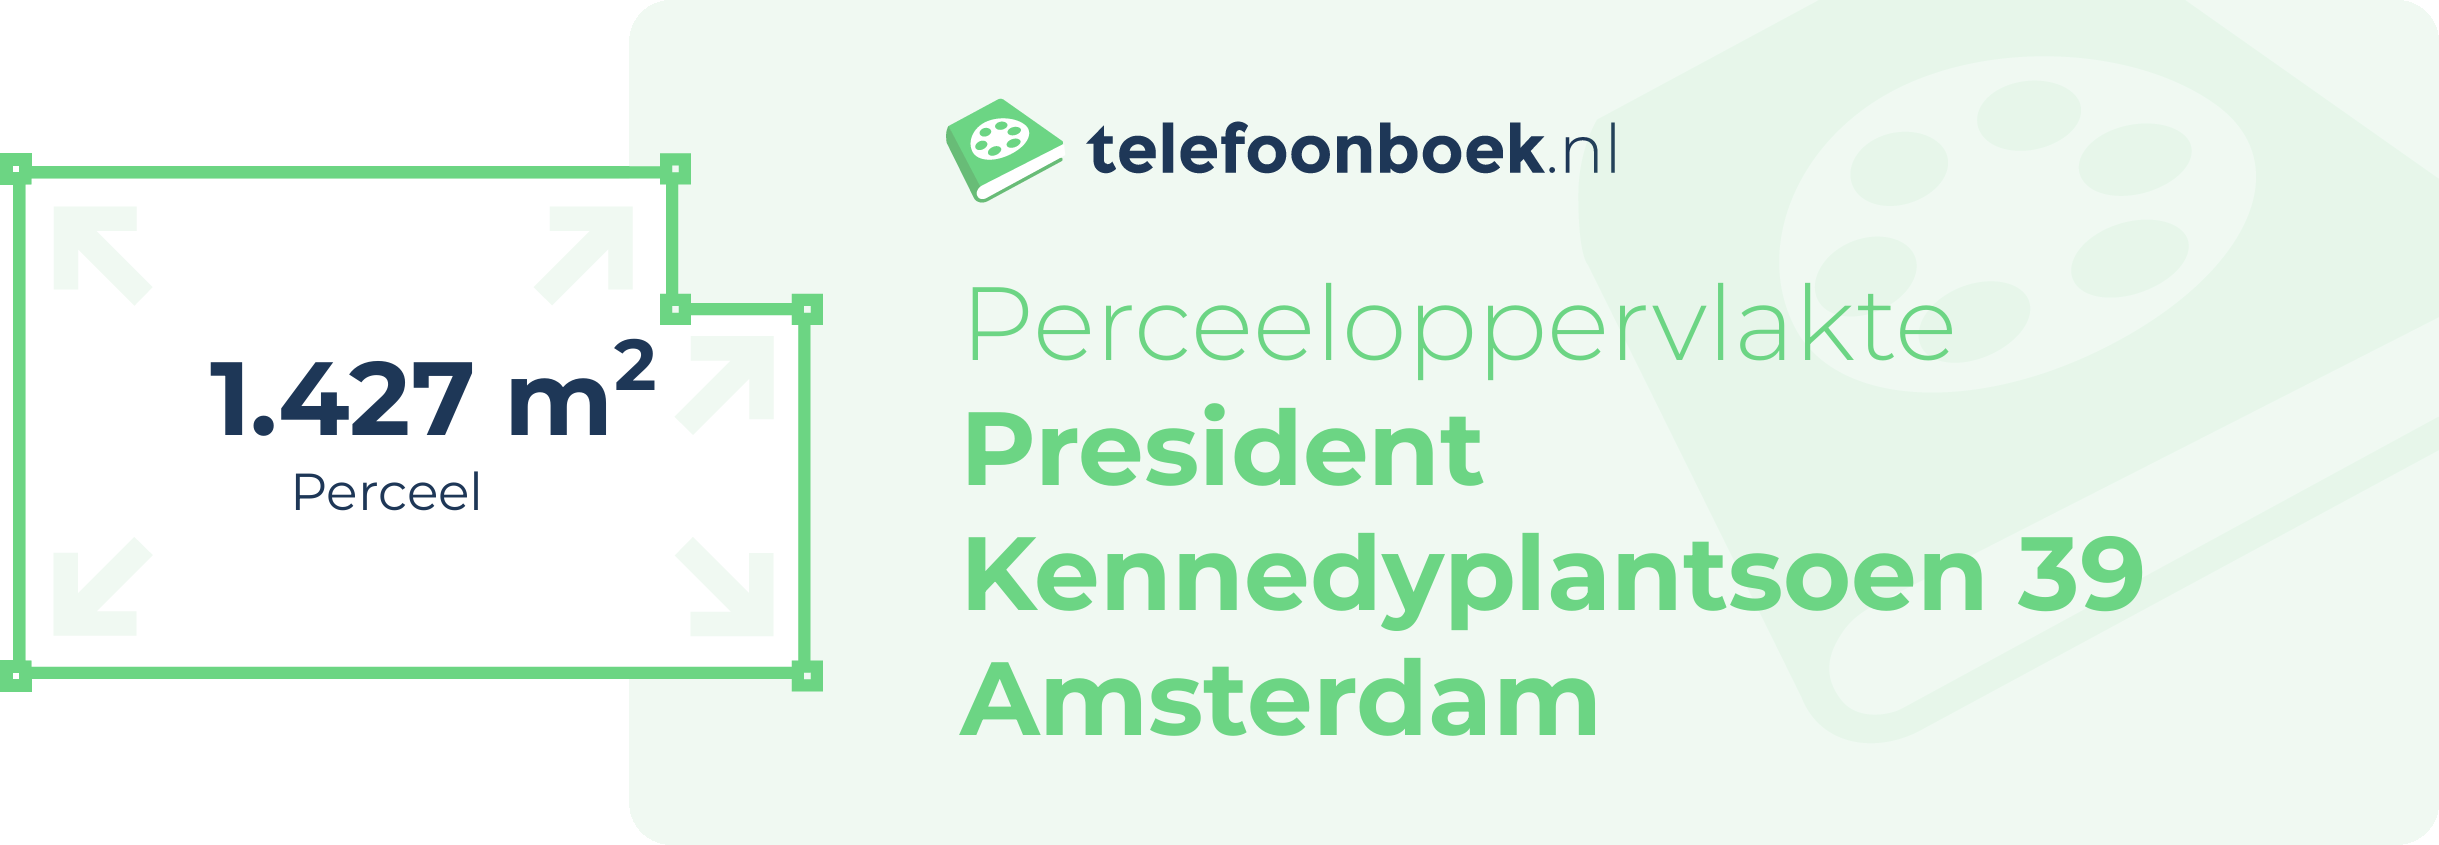 Perceeloppervlakte President Kennedyplantsoen 39 Amsterdam